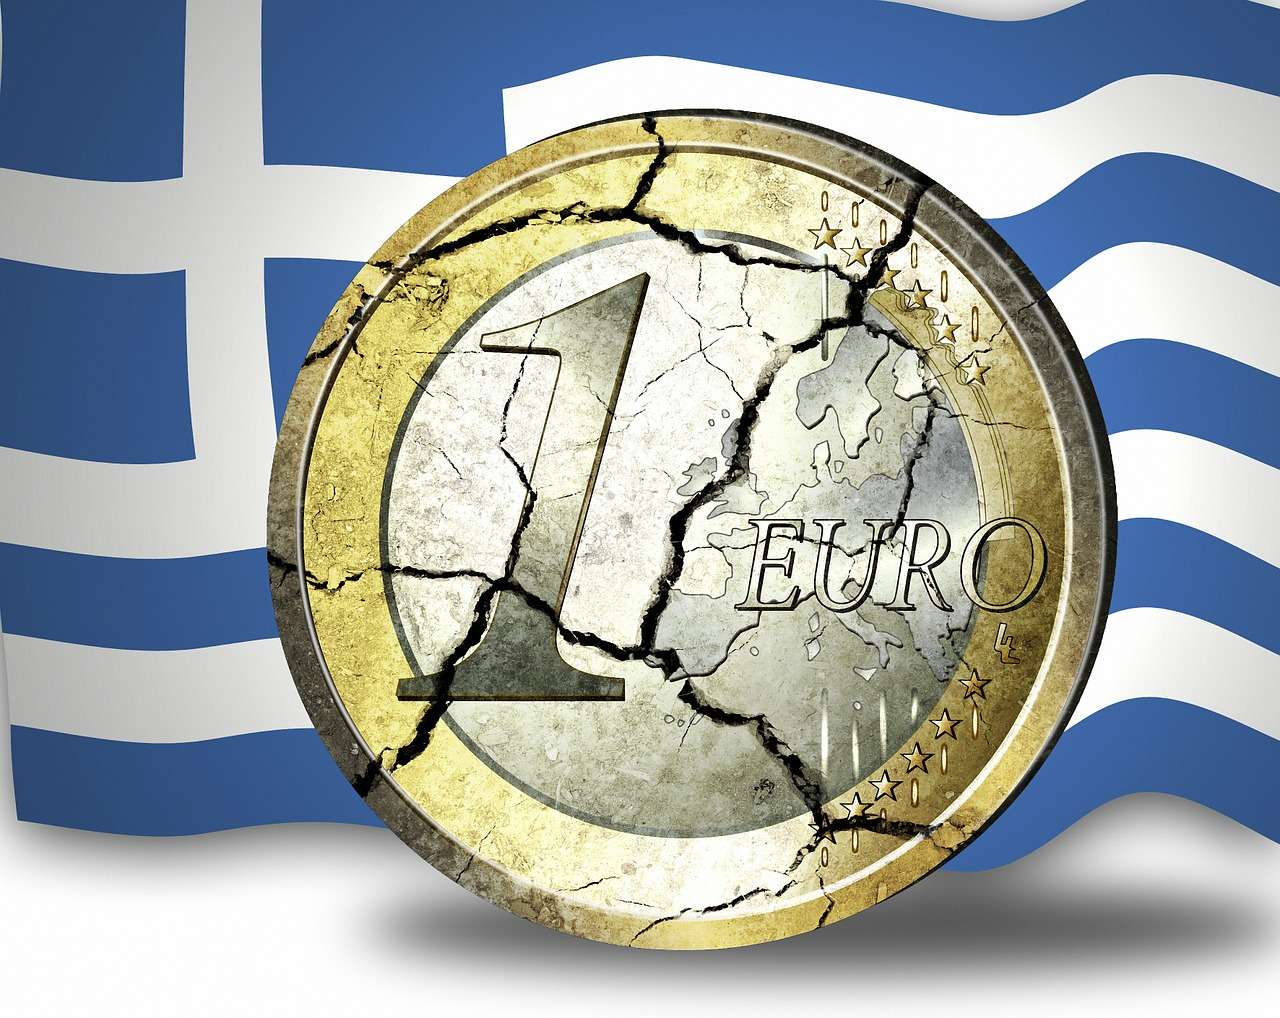 Μια καταιγίδα χρέους και παρατεταμένης ύφεσης απειλεί τον Ευρωπαϊκό Νότο